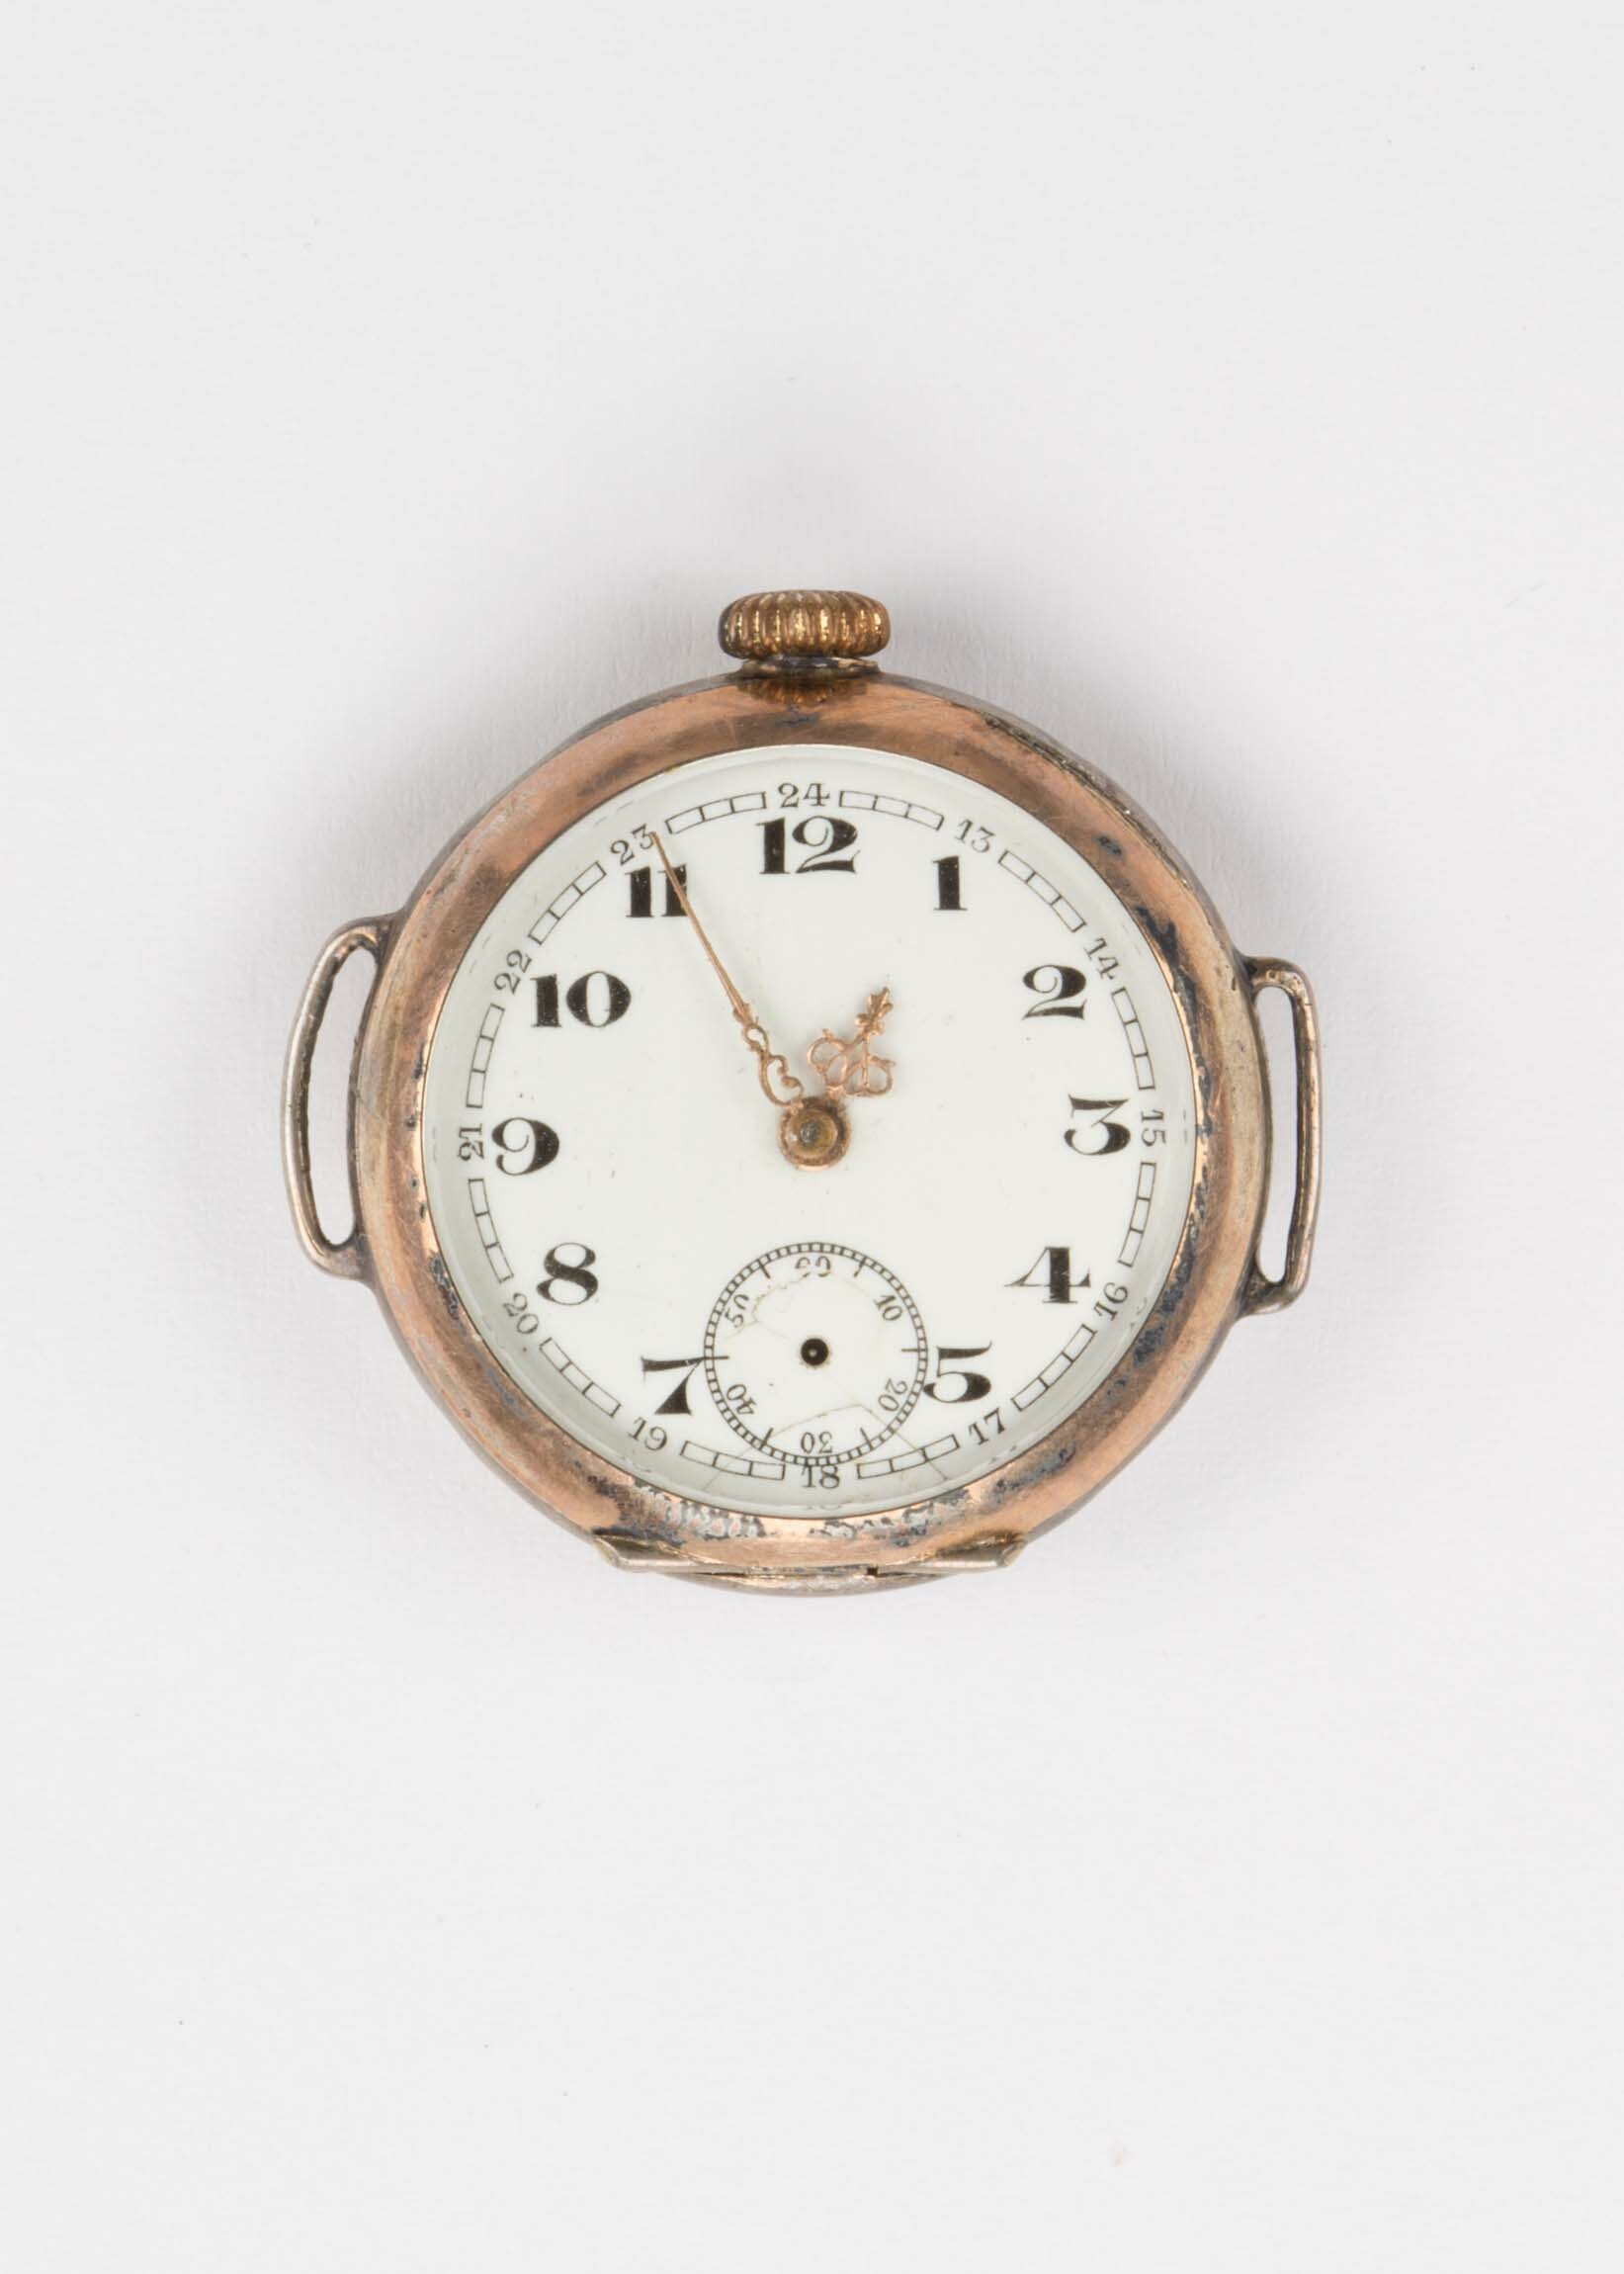 Armbanduhr, umgebaute Taschenuhr, wohl Schweiz, um 1900 (Deutsches Uhrenmuseum CC BY-SA)